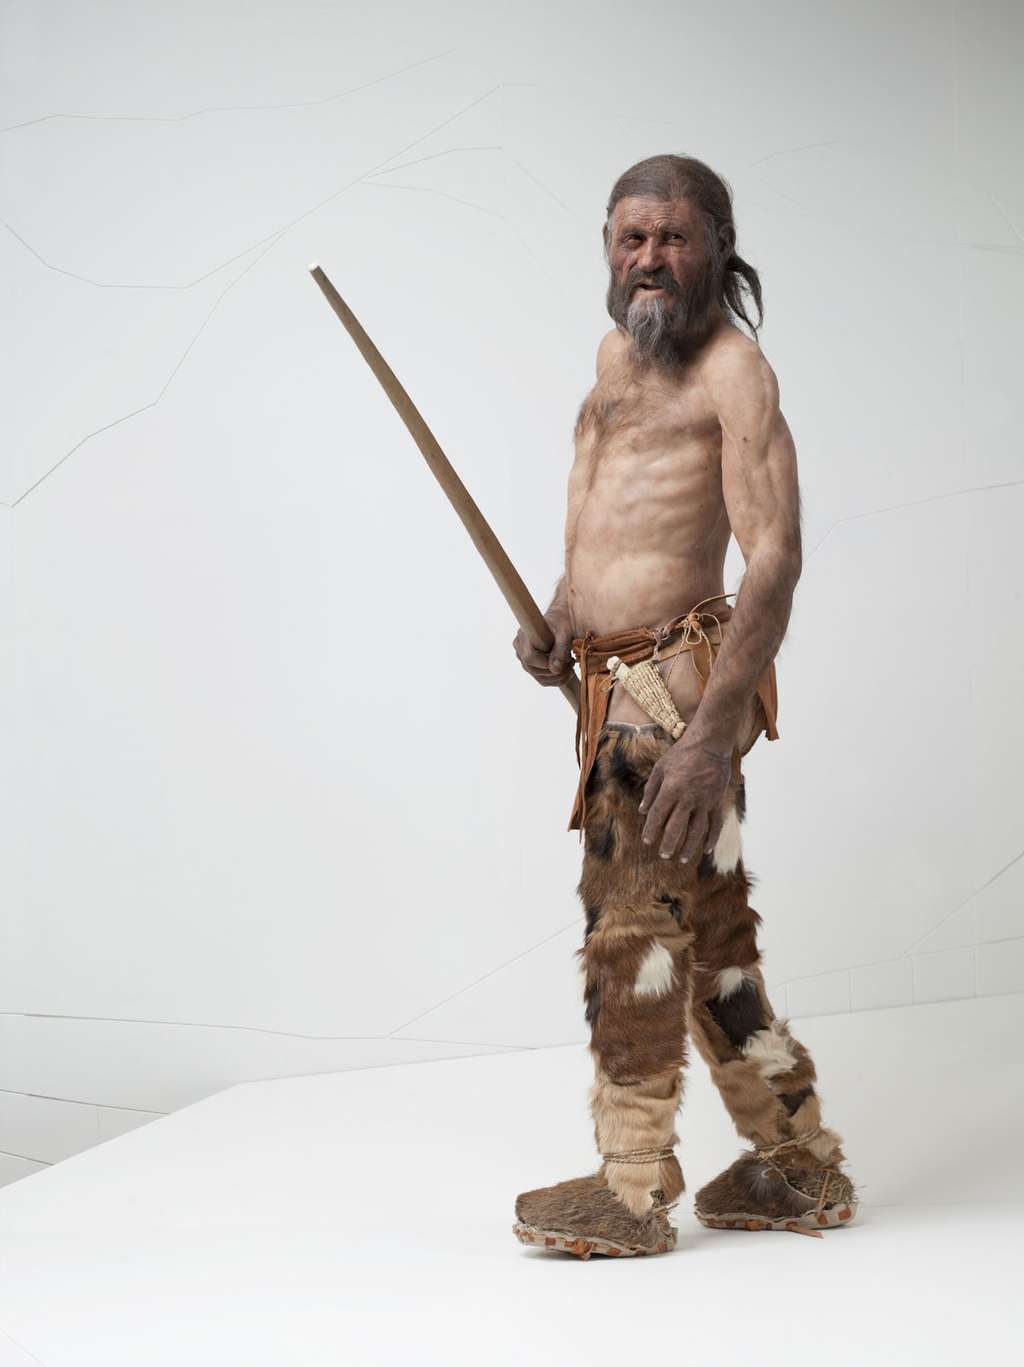 Le mystère d'Ötzi, l'Homme des glaces